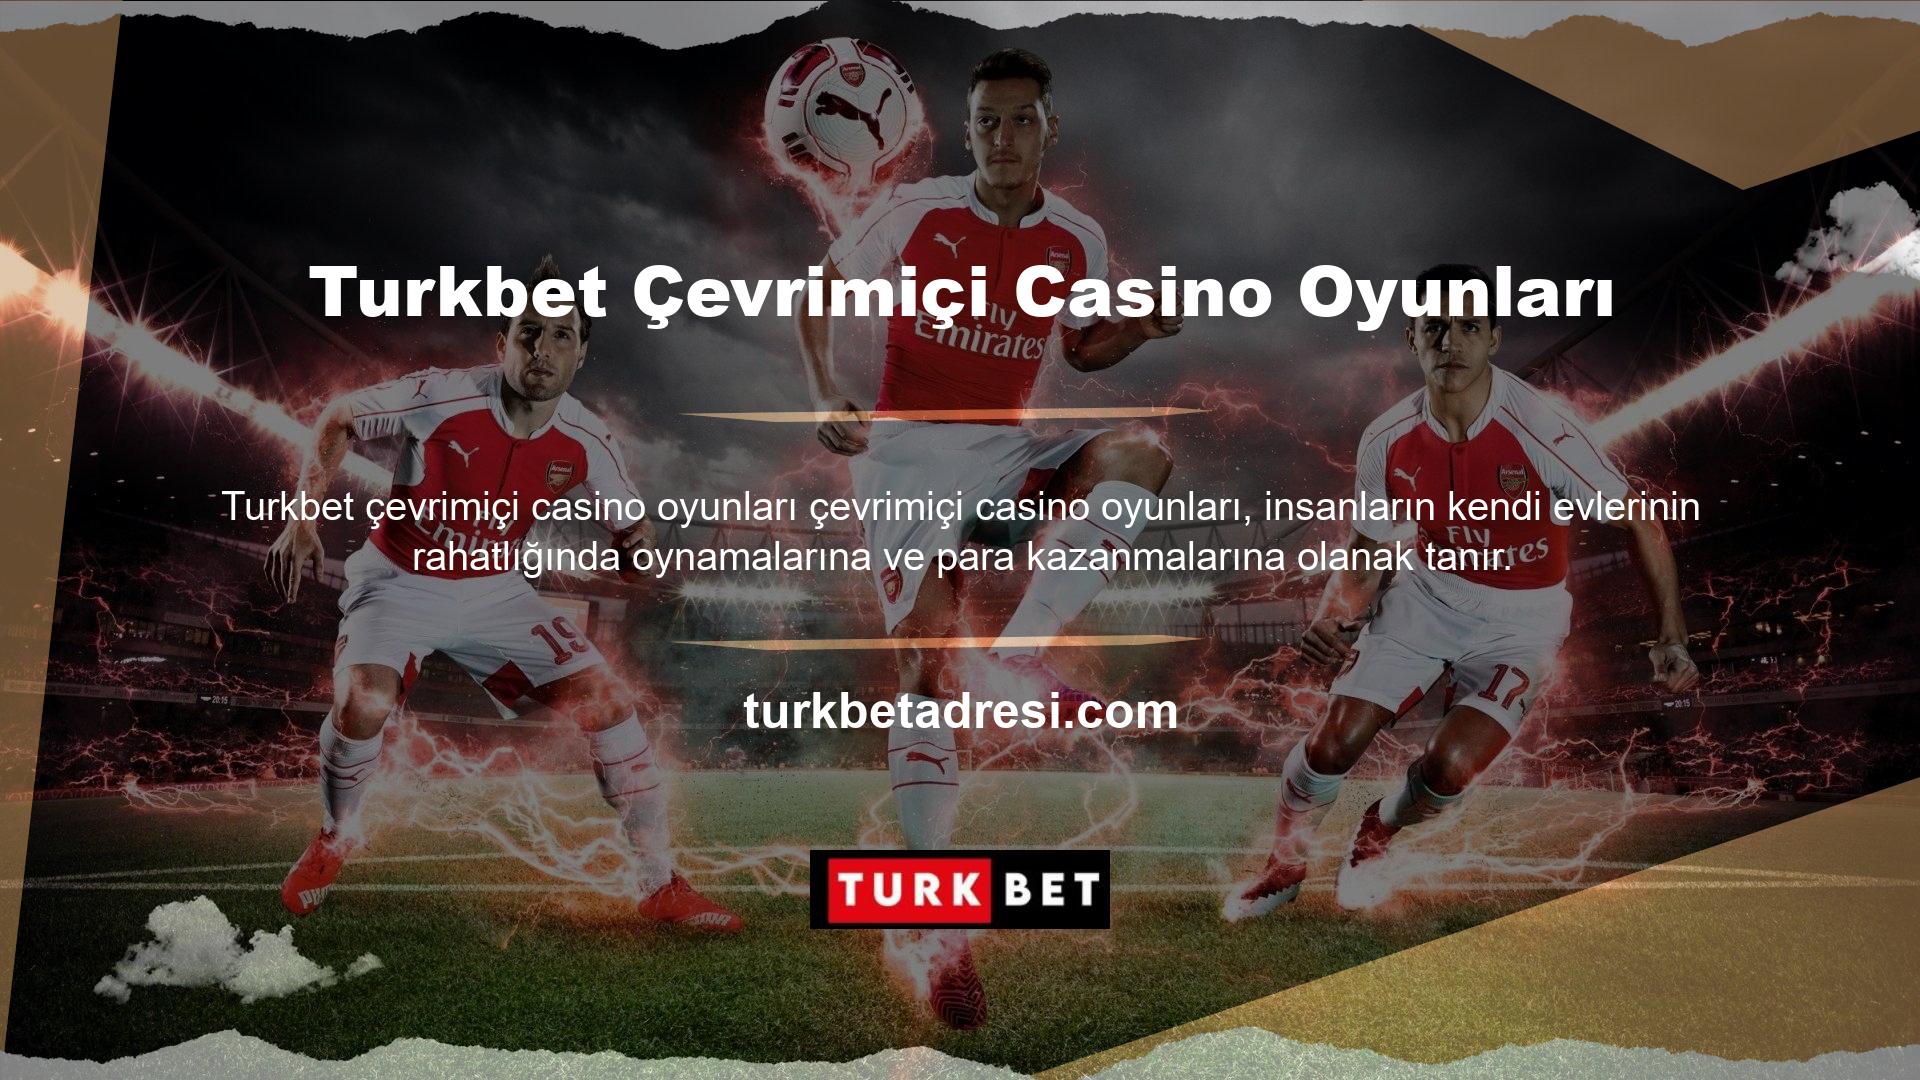 Turkbet Oyun Sitesi, üye hesapları olan kullanıcılara çok çeşitli oyunlar sunan uluslararası bir oyun sitesidir